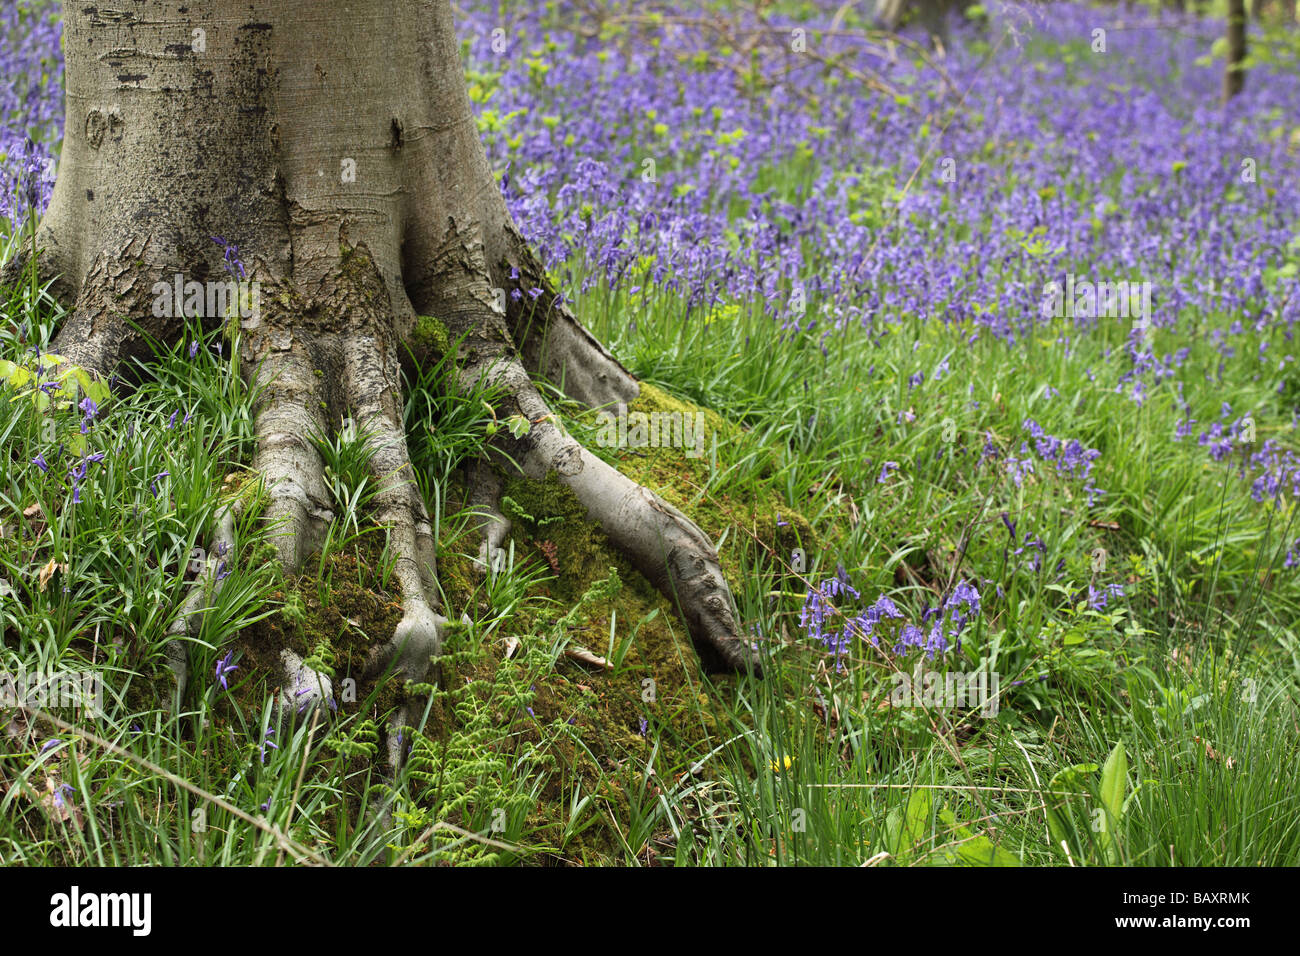 Gros plan sur le tronc arboré montrant des racines exposées dans un bois de printemps Bluebell, Royaume-Uni Banque D'Images